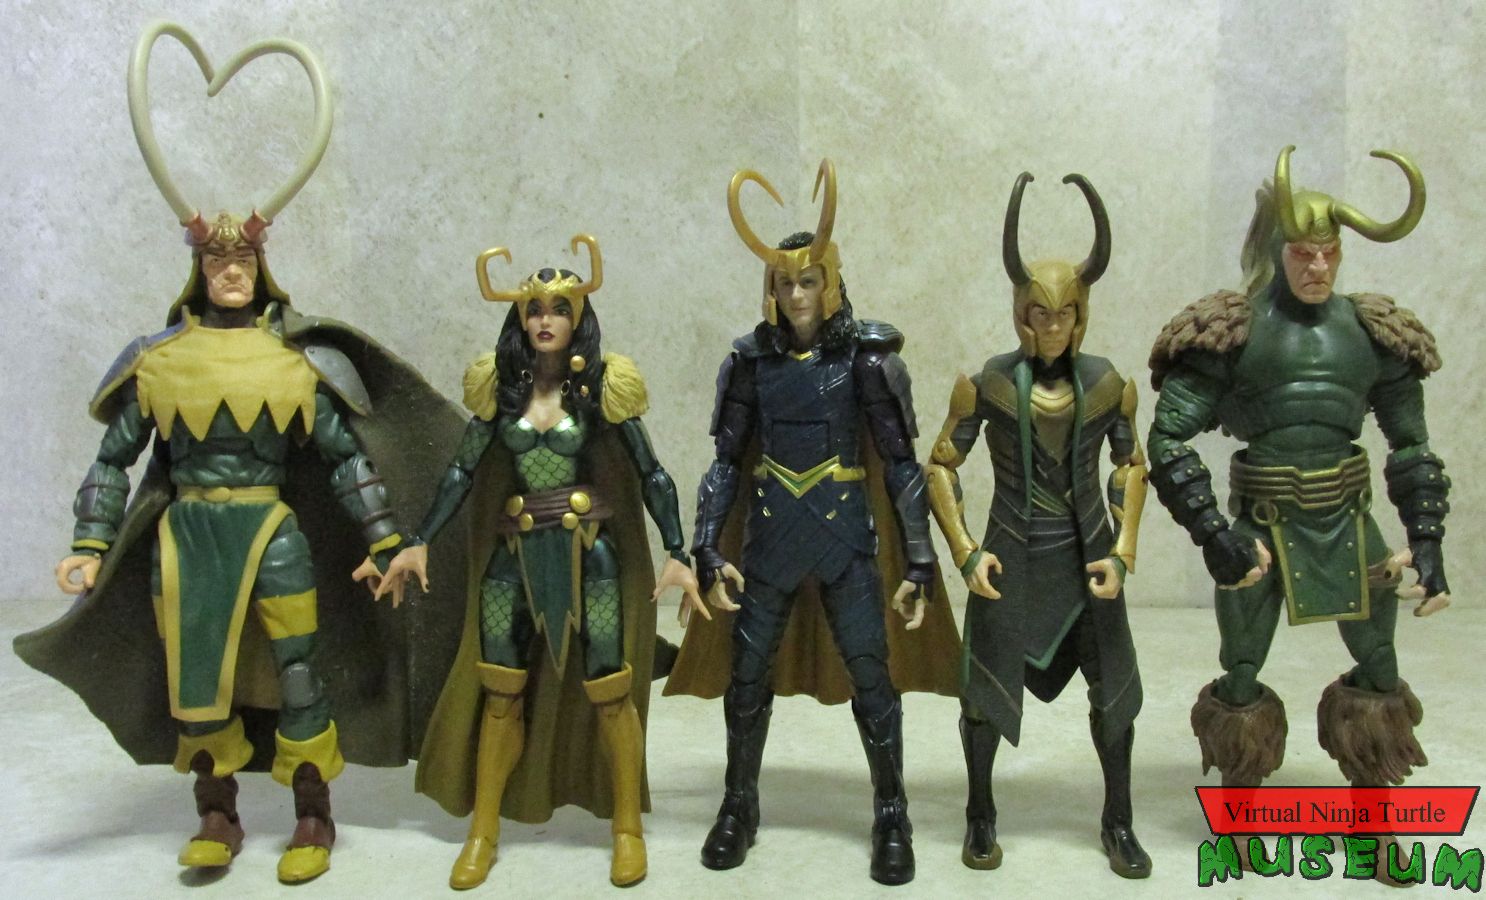 Loki figures